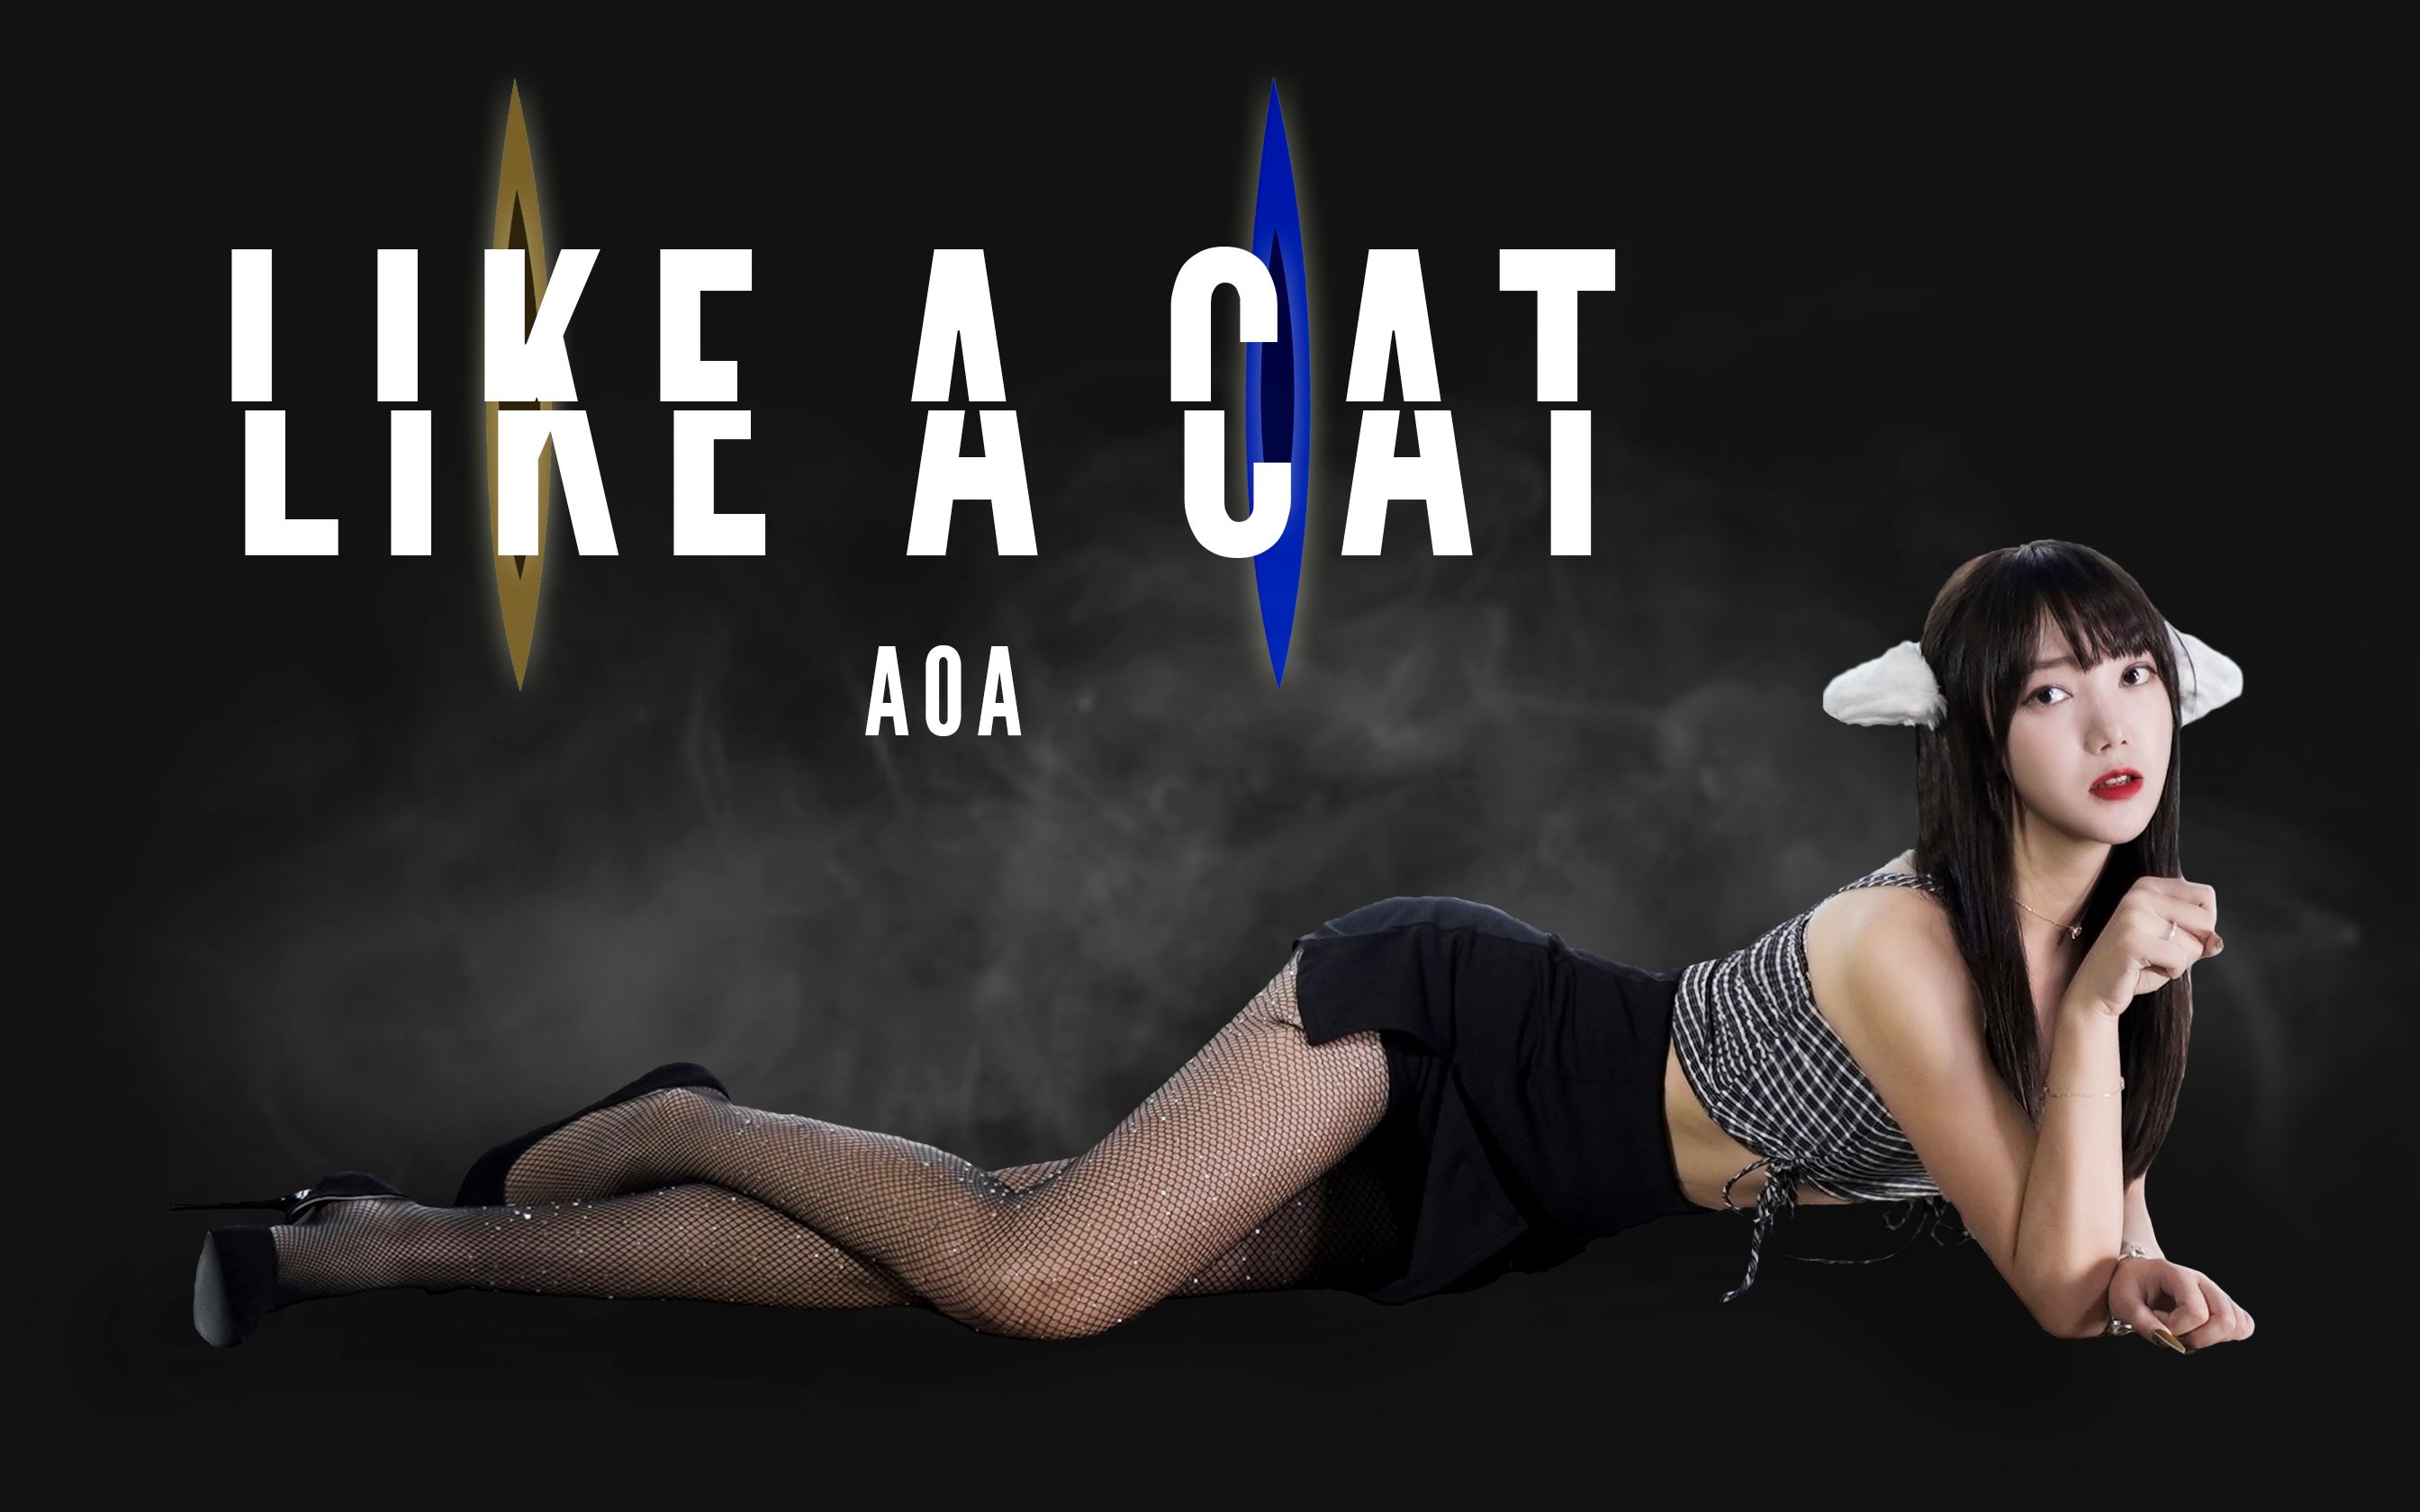 【懵小巧】AOA like a cat 巧儿化身猫猫女魅惑又性感   您的猫咪快递到了，麻烦签收下！！！